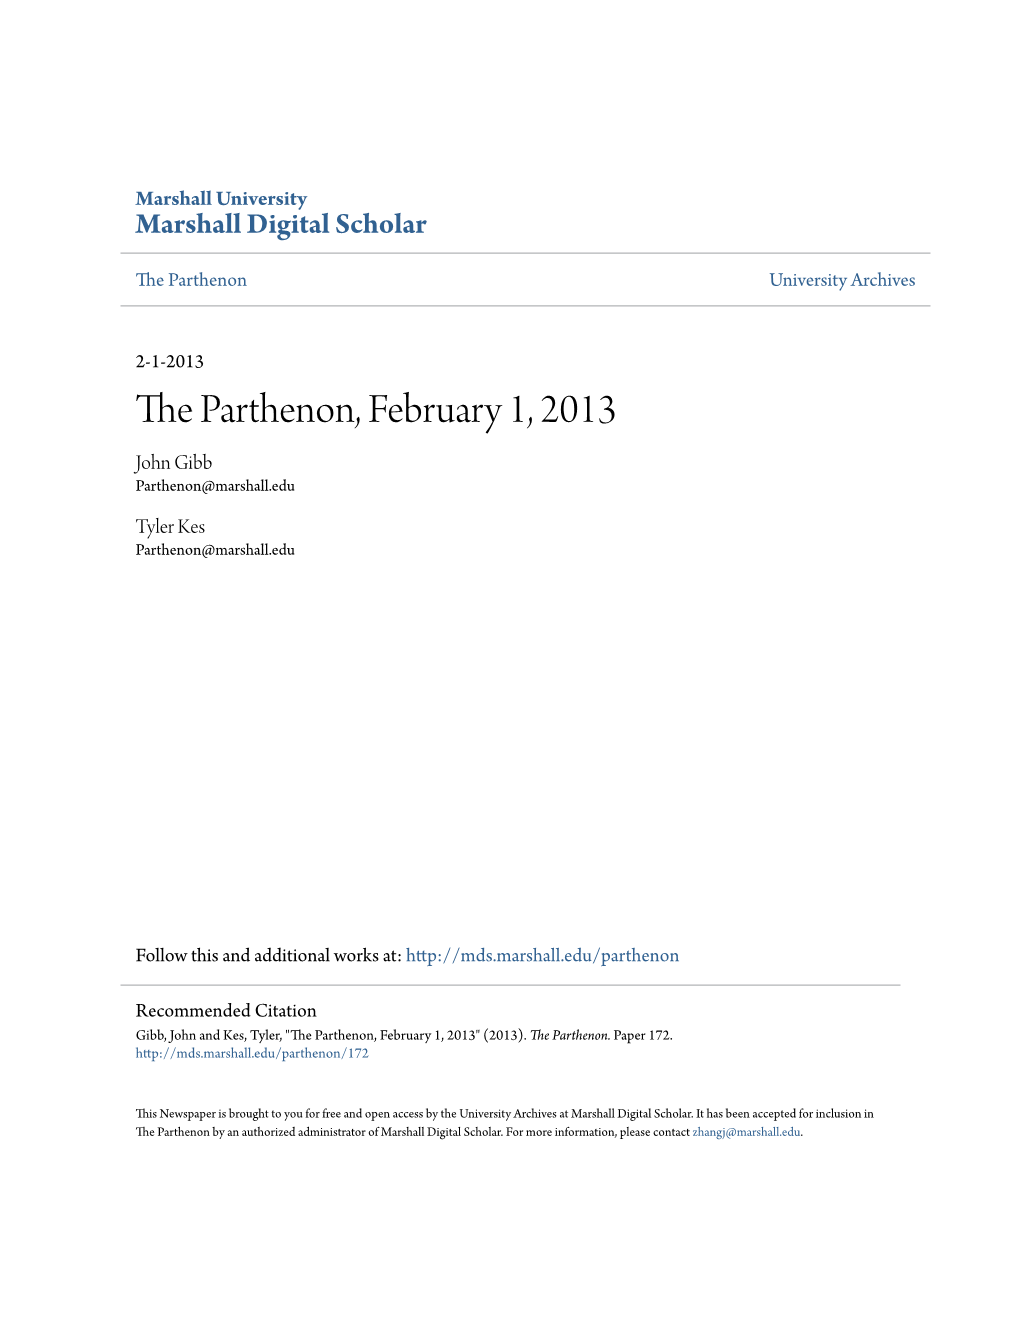 The Parthenon, February 1, 2013